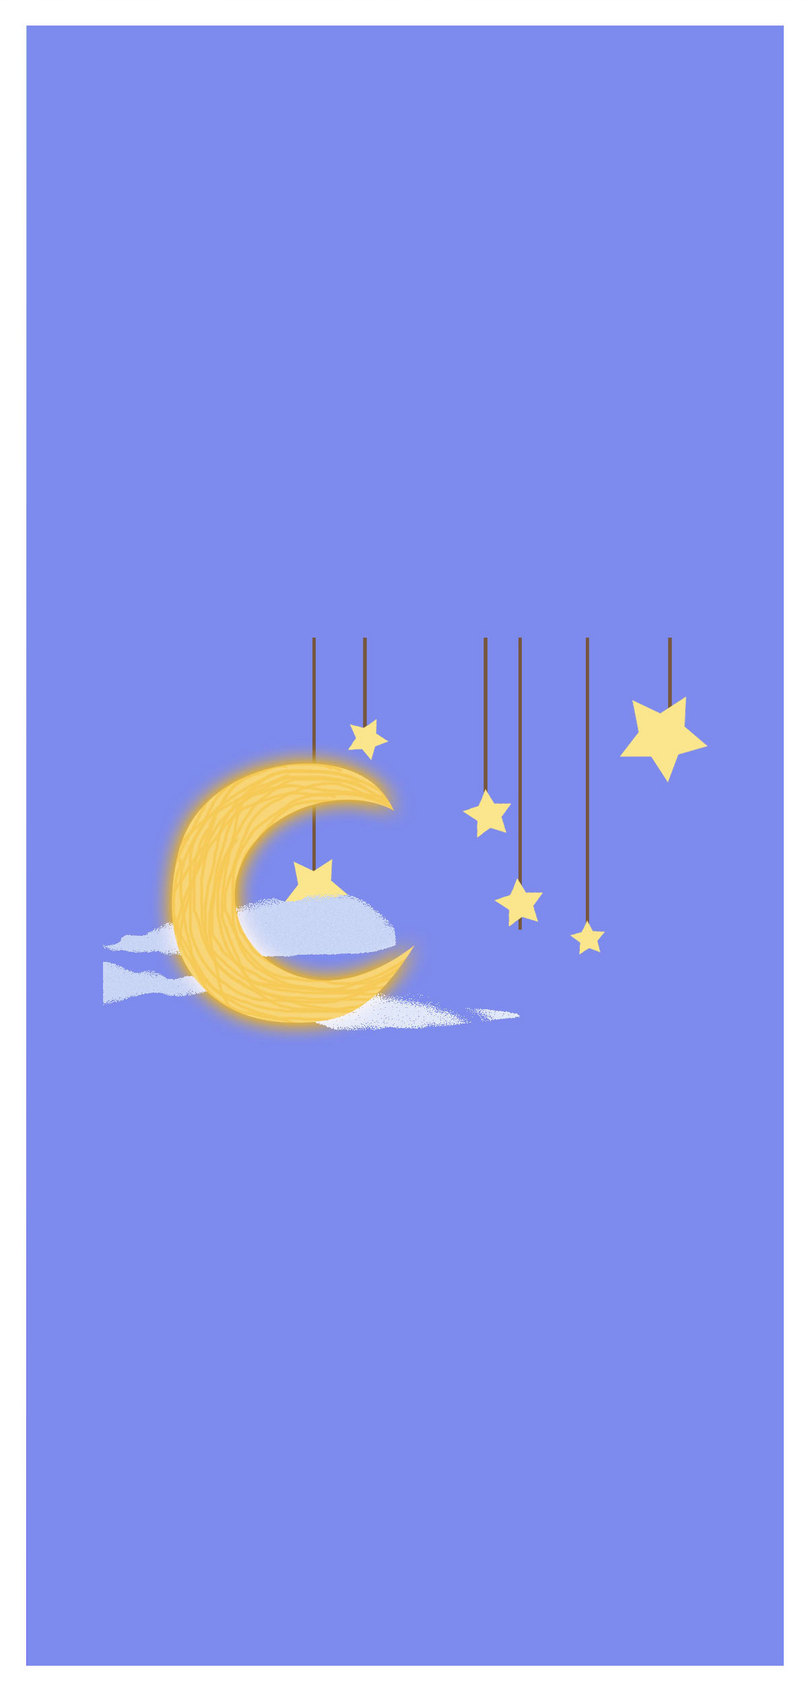 Moon Star Mobile Wallpaper - Fondo De Pantallas De Lunas Y Estrellas , HD Wallpaper & Backgrounds